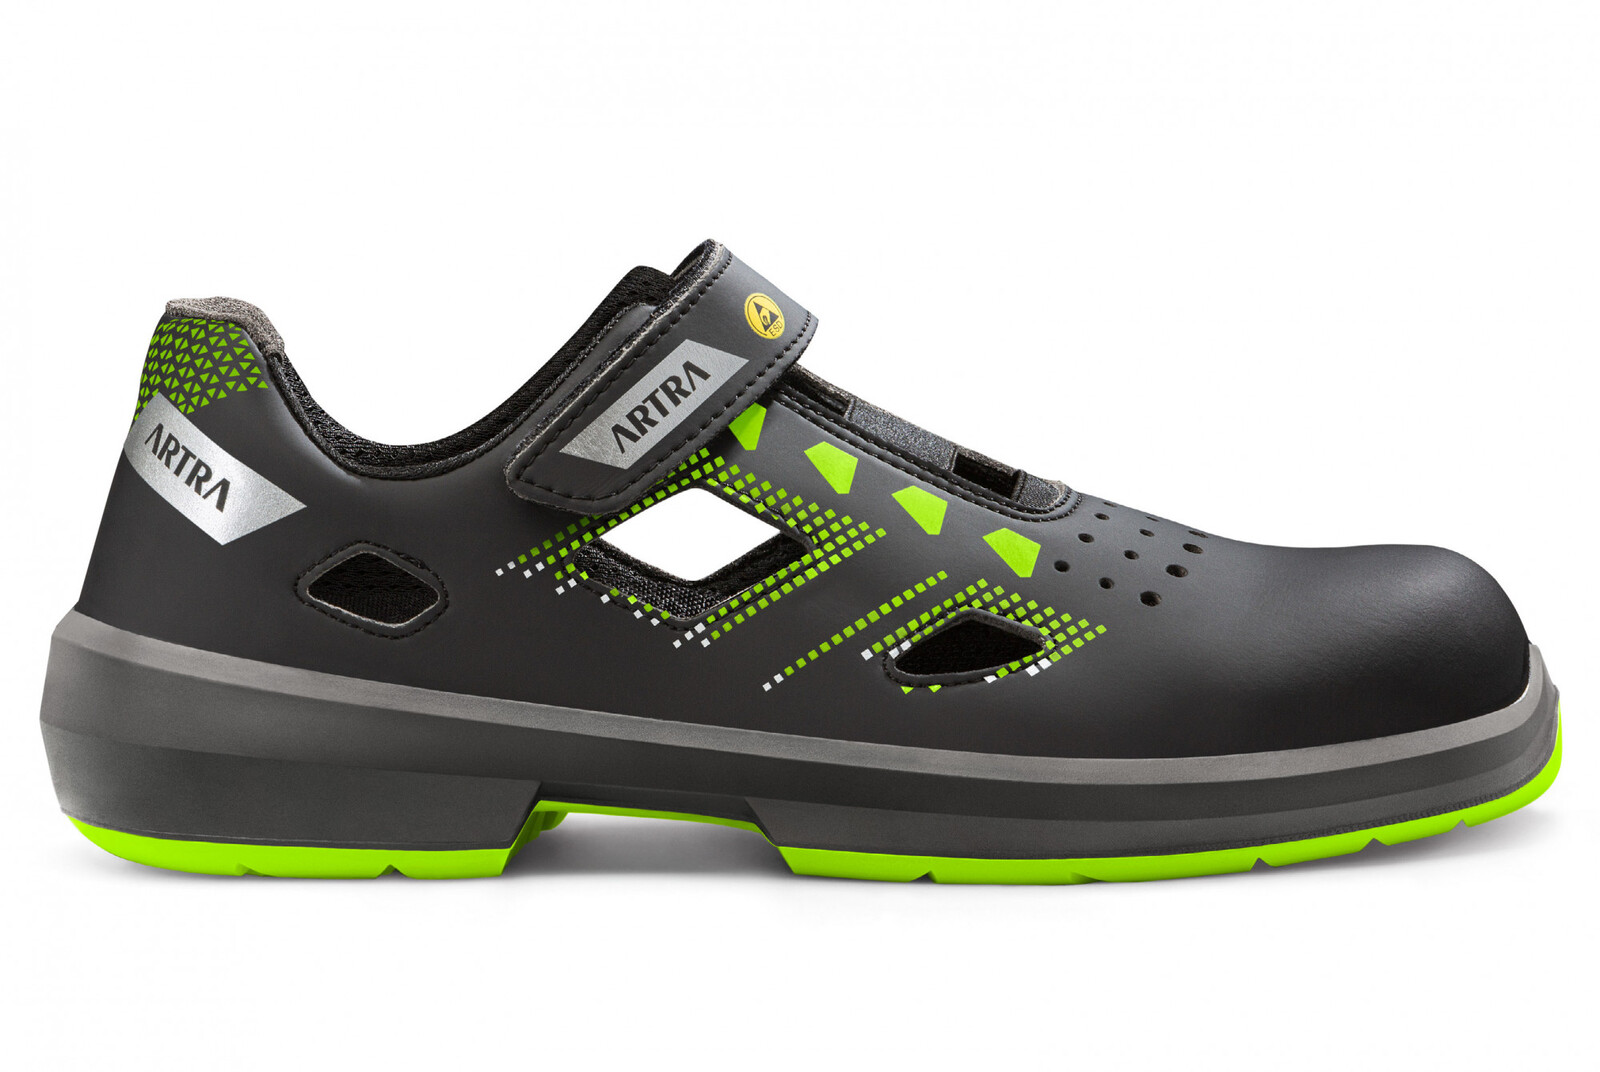 Bezpečnostné sandále Artra Arzo 805 678080 S1 SRC ESD MF - veľkosť: 42, farba: čierna/zelená